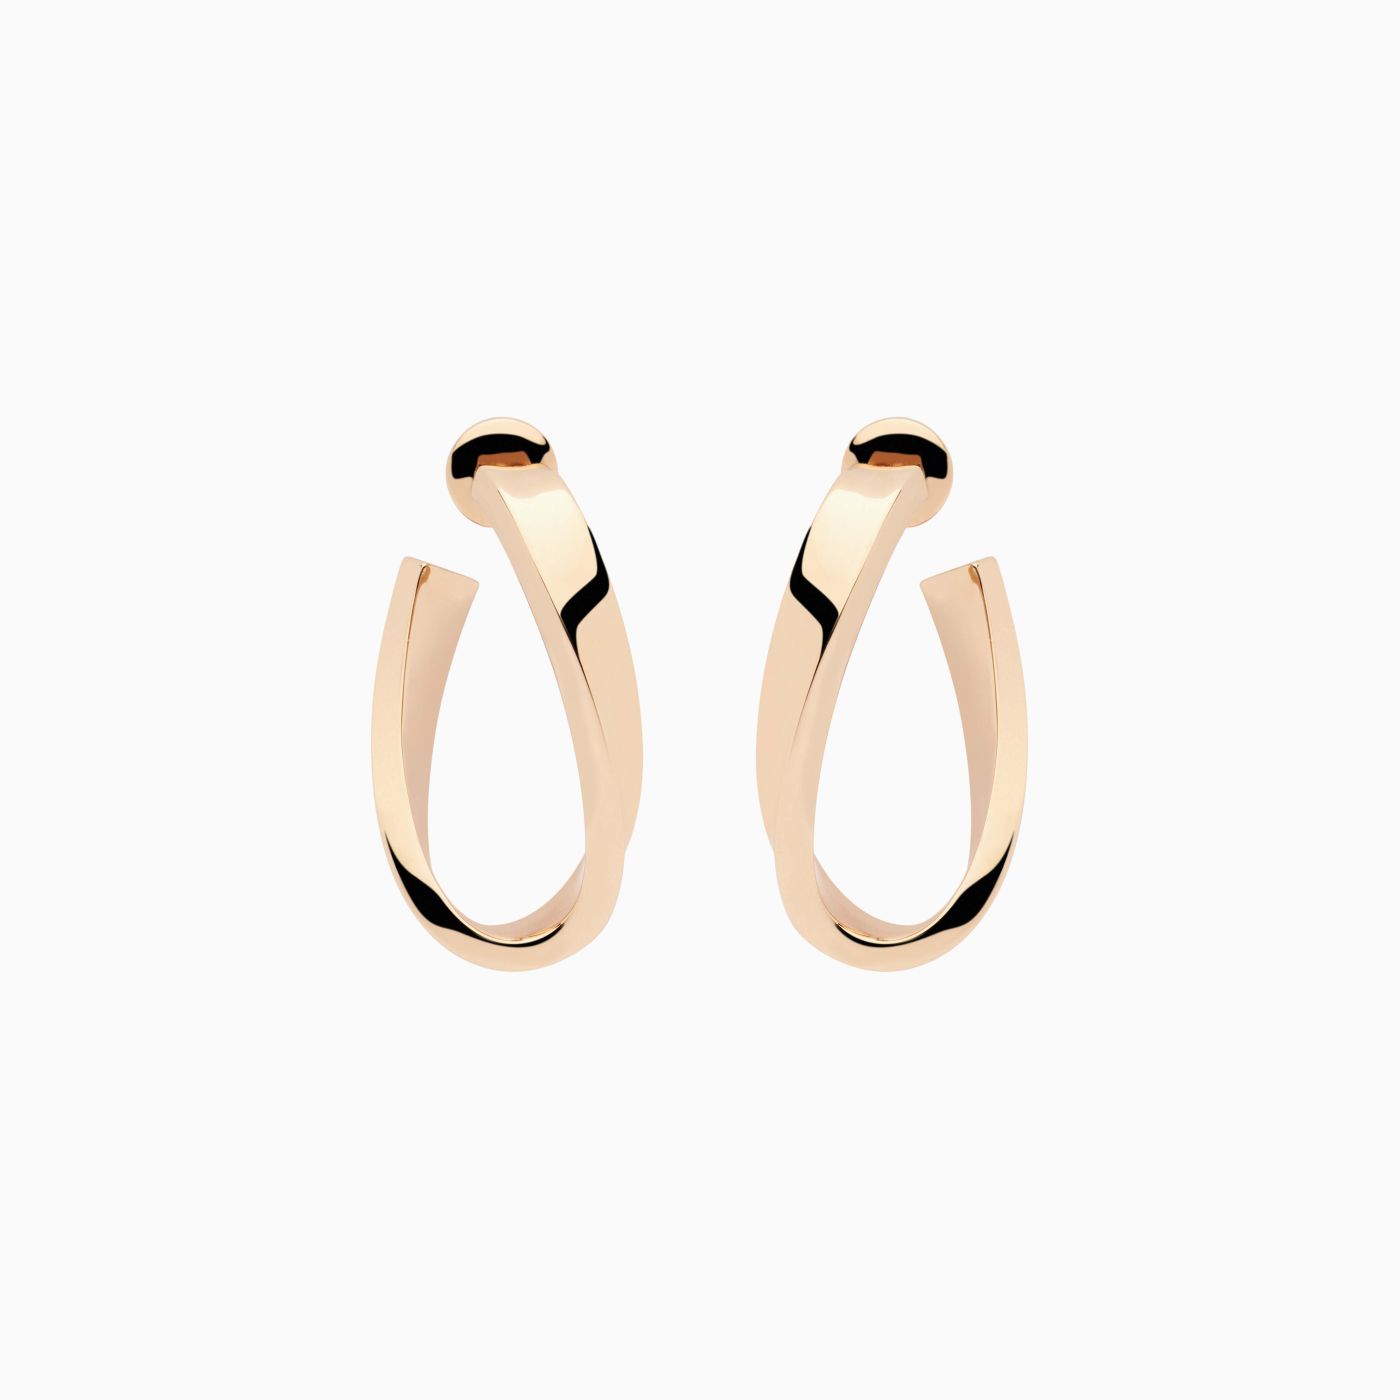 Oval hoops earrings in rose gold